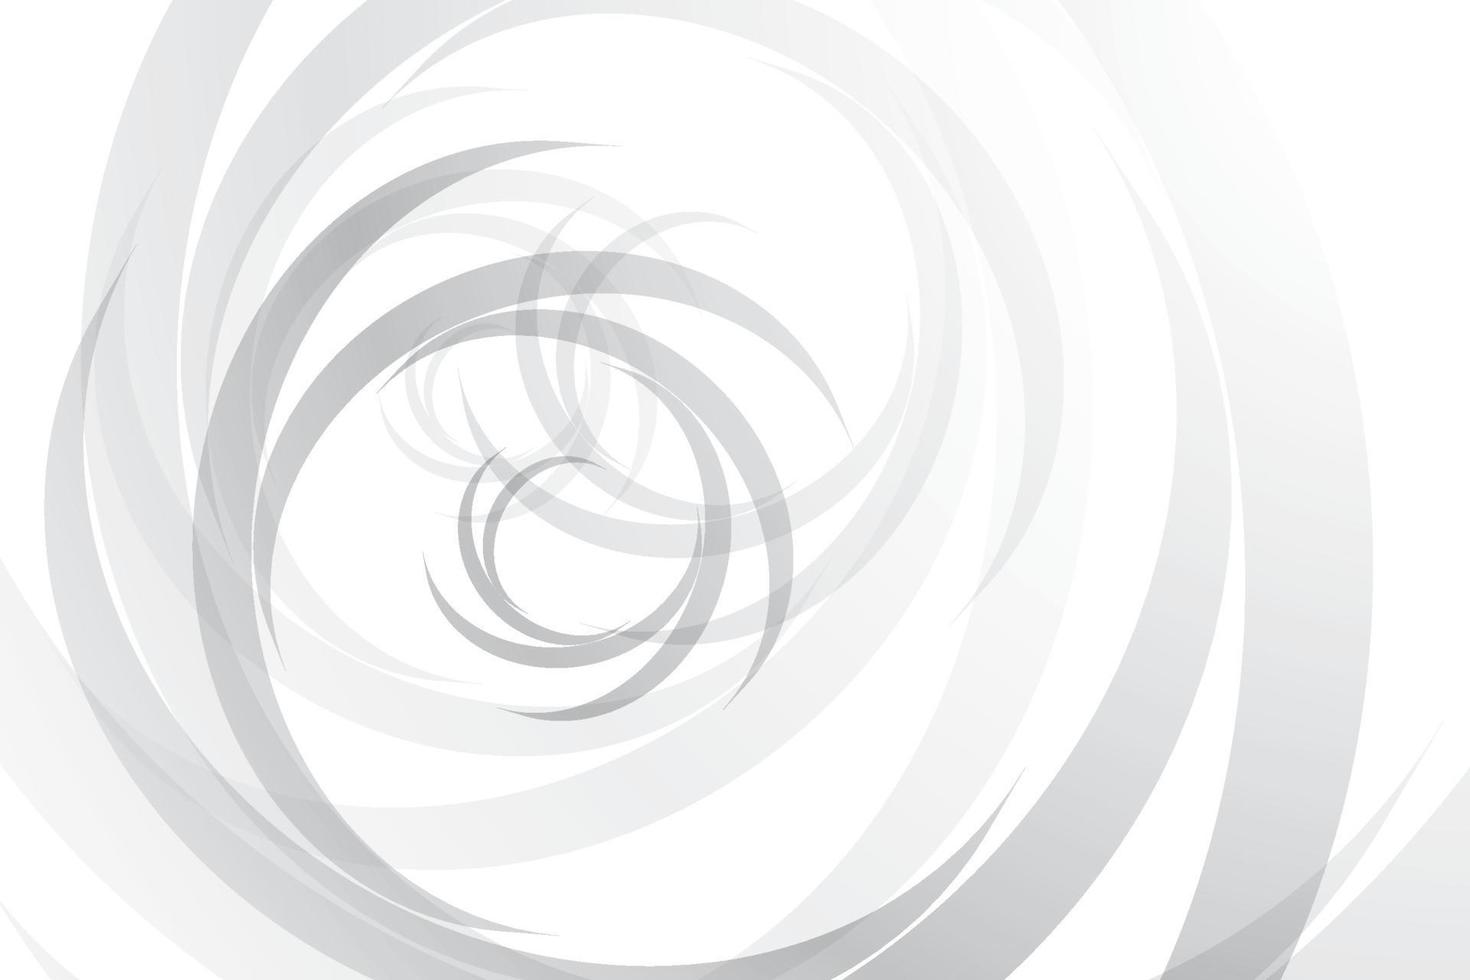 couleur blanche et grise abstraite, fond de rayures de conception moderne avec une forme ronde géométrique. illustration vectorielle. vecteur